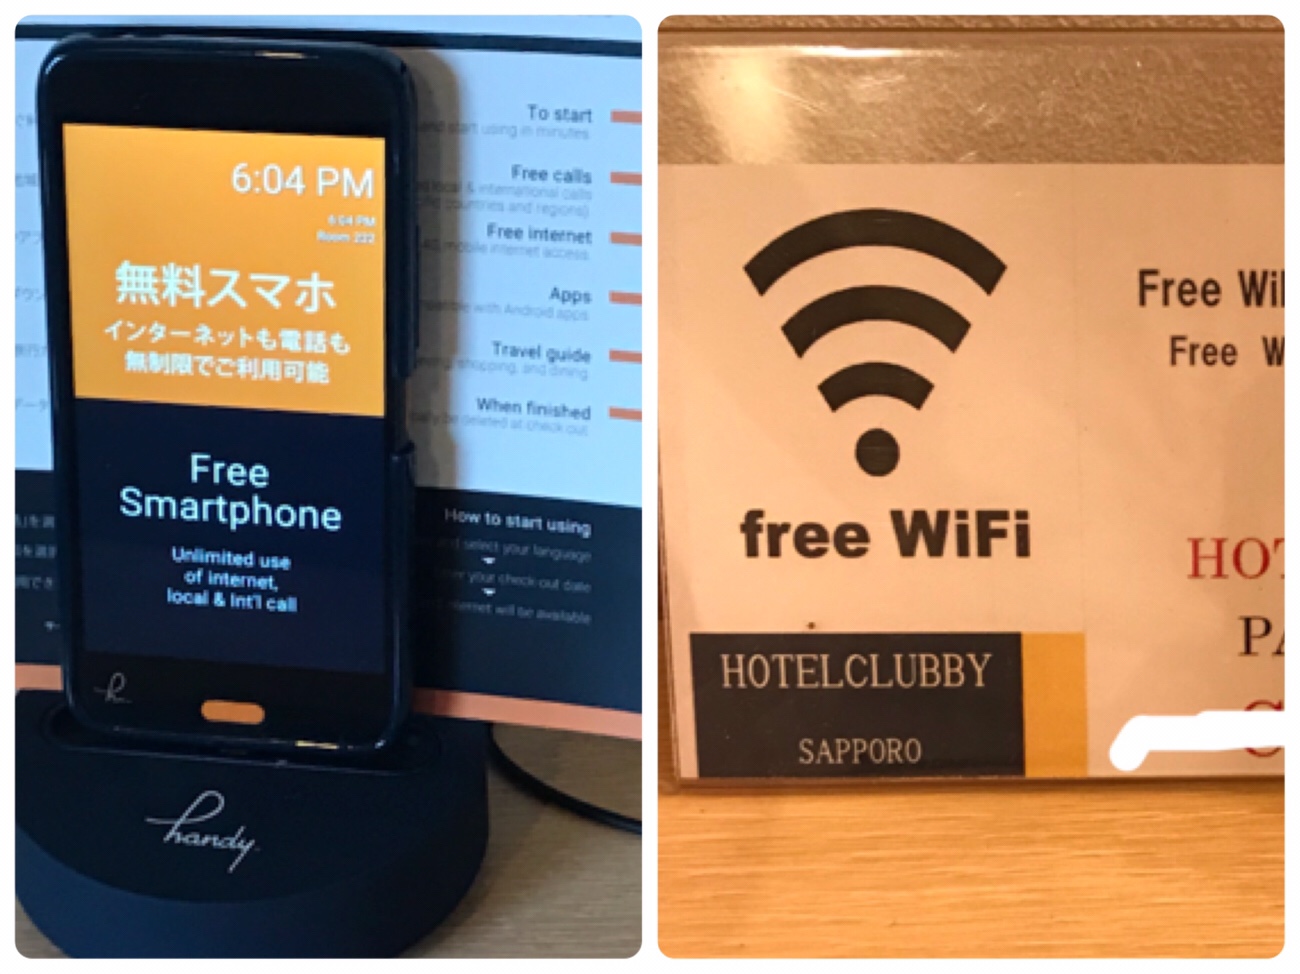 ホテルクラビーサッポロ部屋の無料のWi-Fiと無料のスマホ